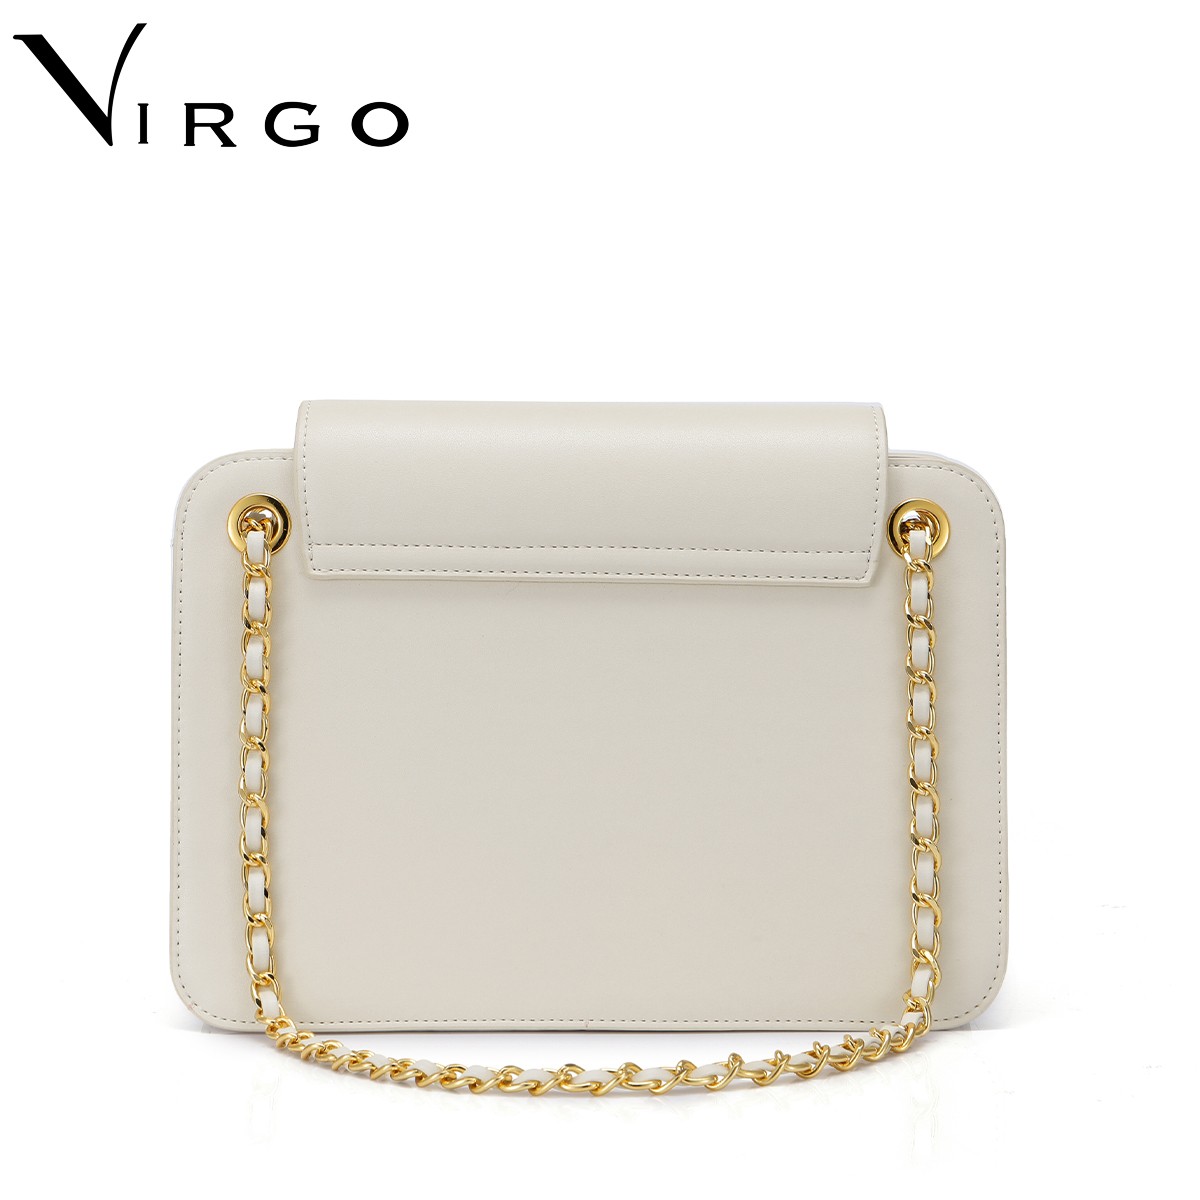 Túi nữ thời trang Just Star Virgo VG677